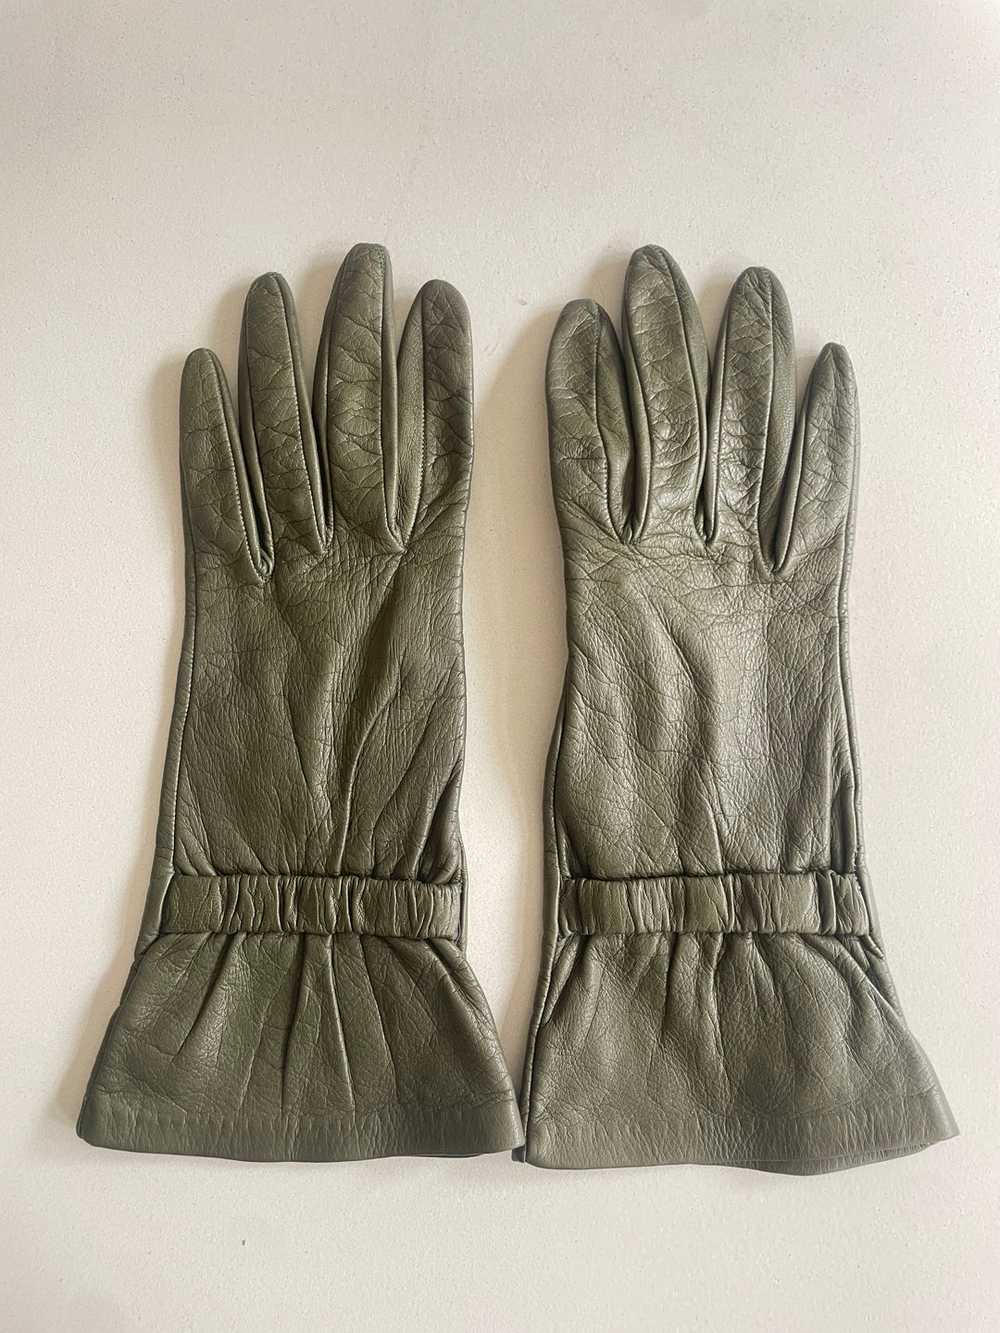 Vintage Green Kid Leather Gloves - image 1